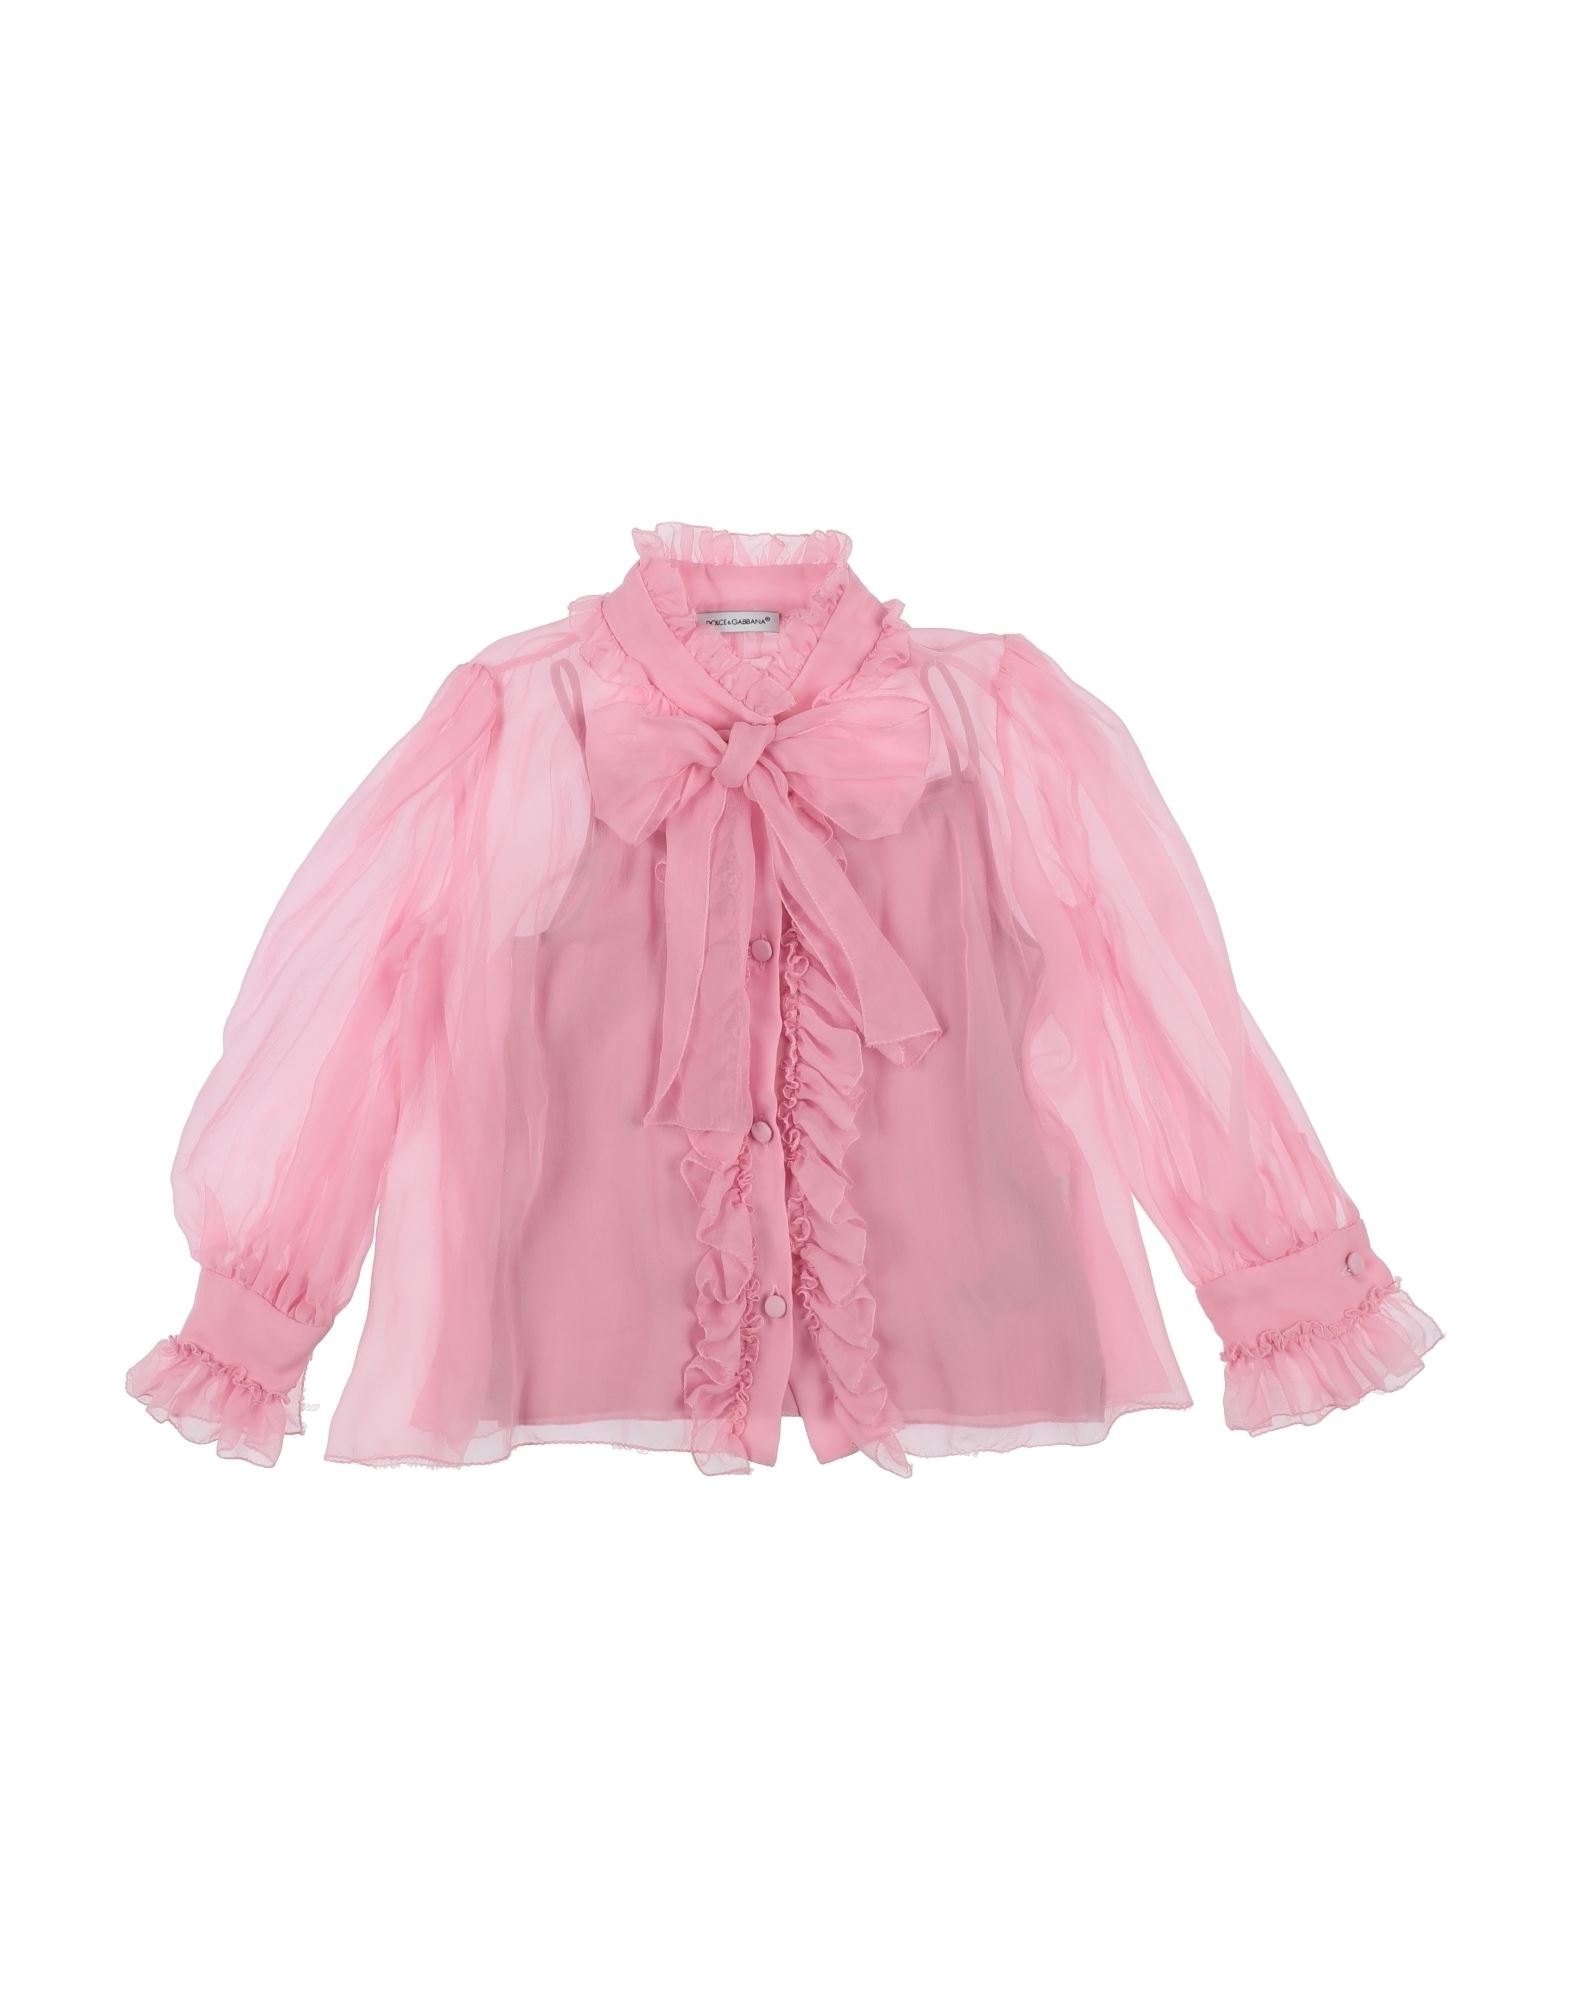 Dolce & Gabbana Kids'  Toddler Girl Shirt Pink Size 7 Silk